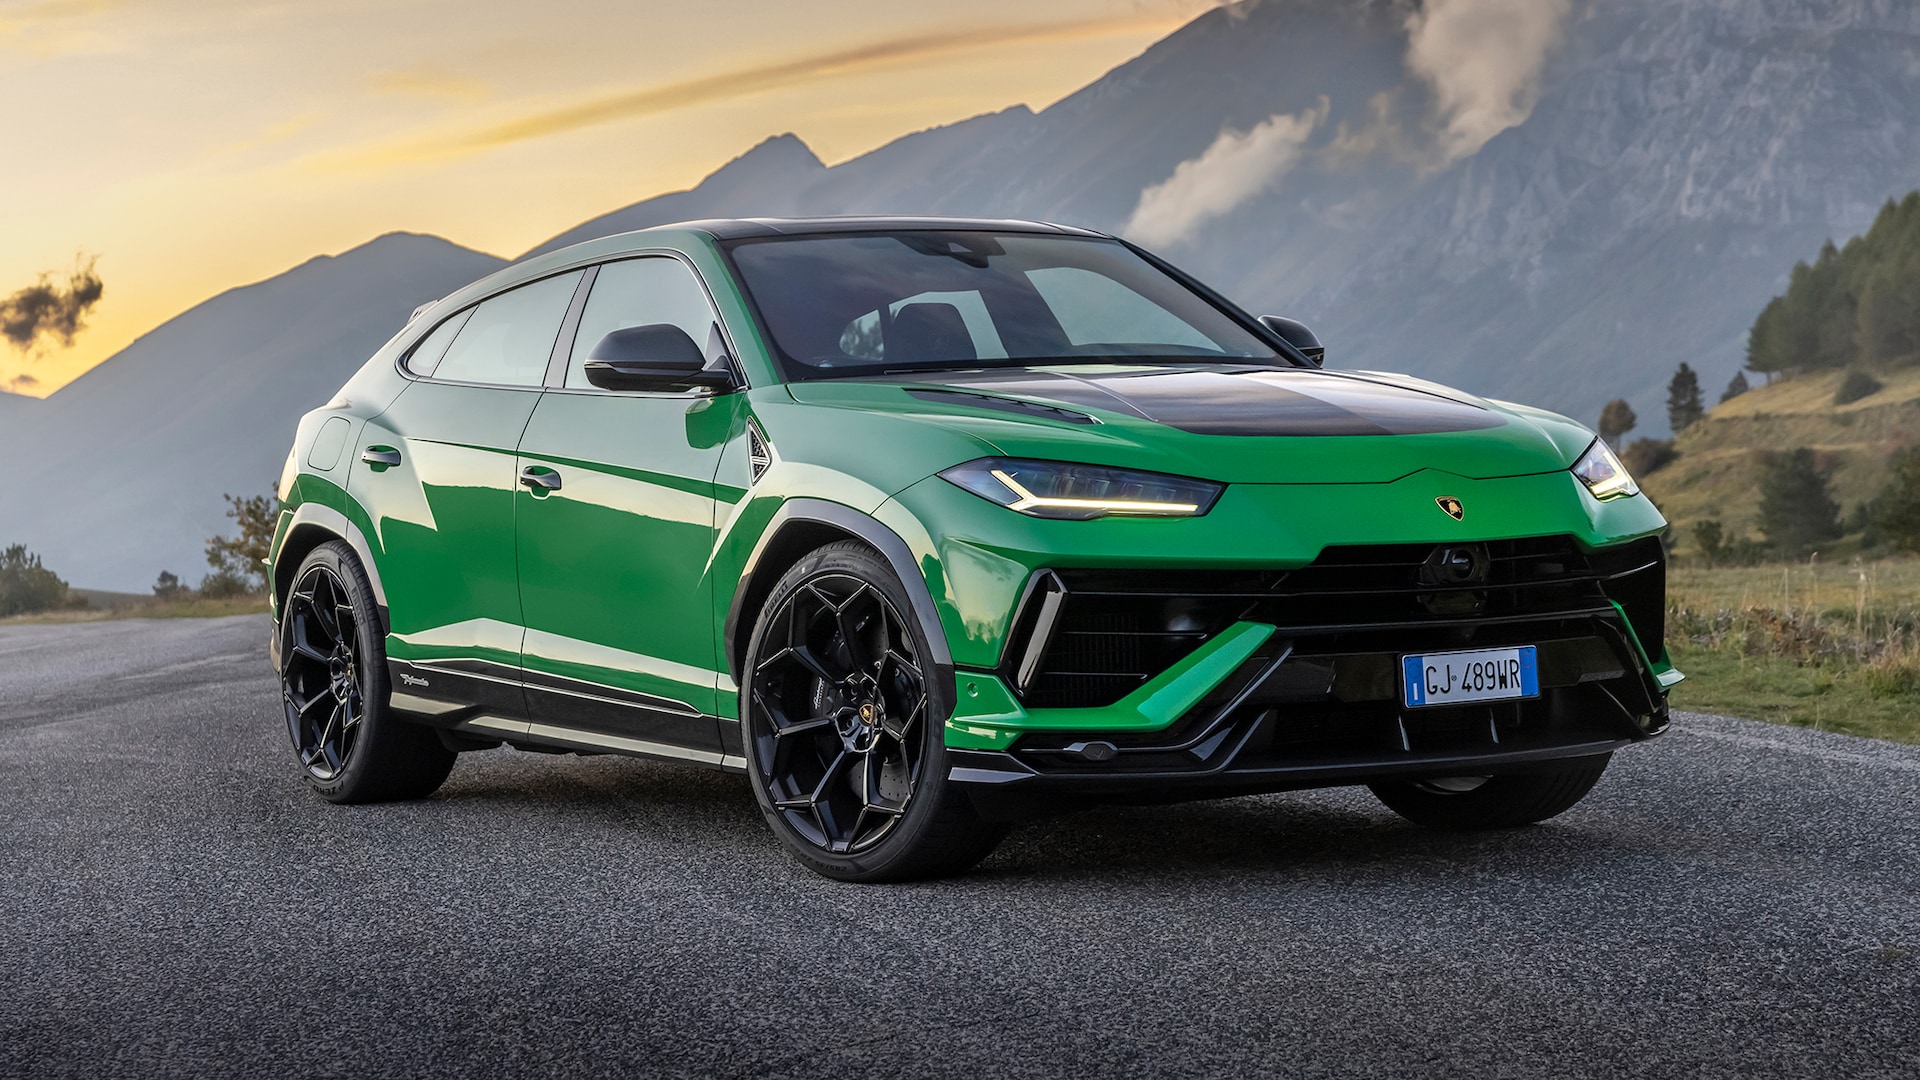 2023 Lamborghini Urus Prices, Reviews, and Photos - MotorTrend